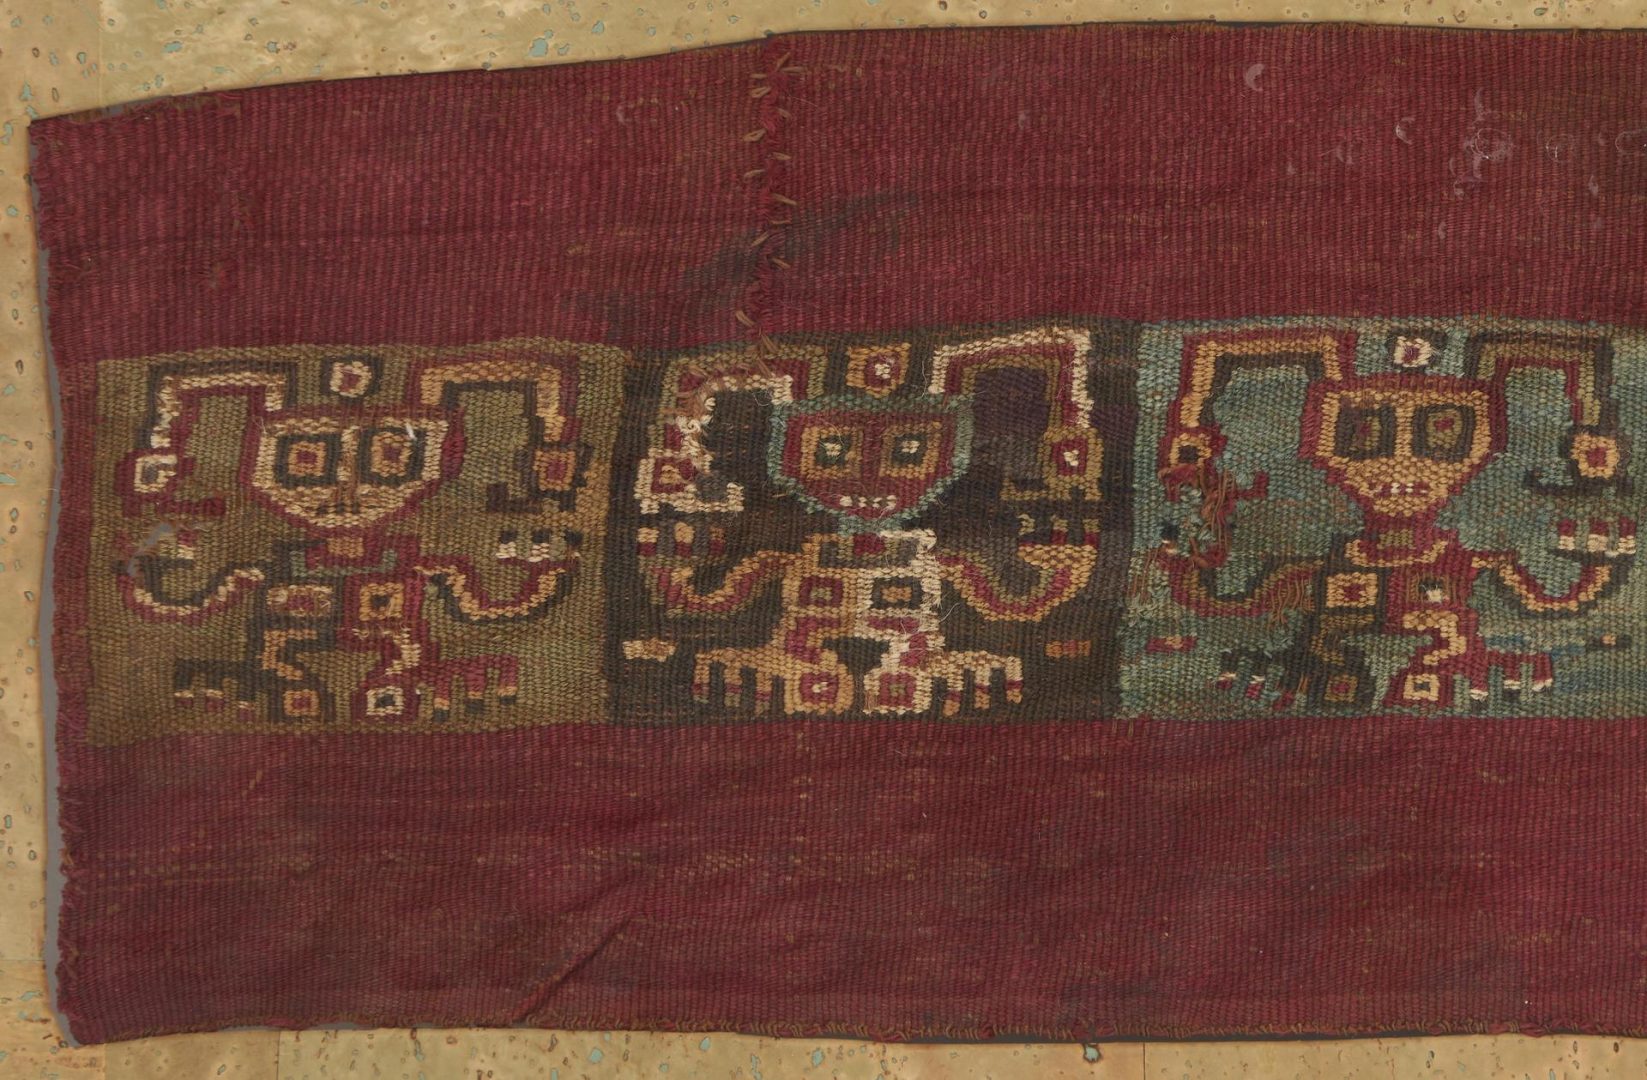 Lot 1025: Framed Precolumbian Inca Weaving